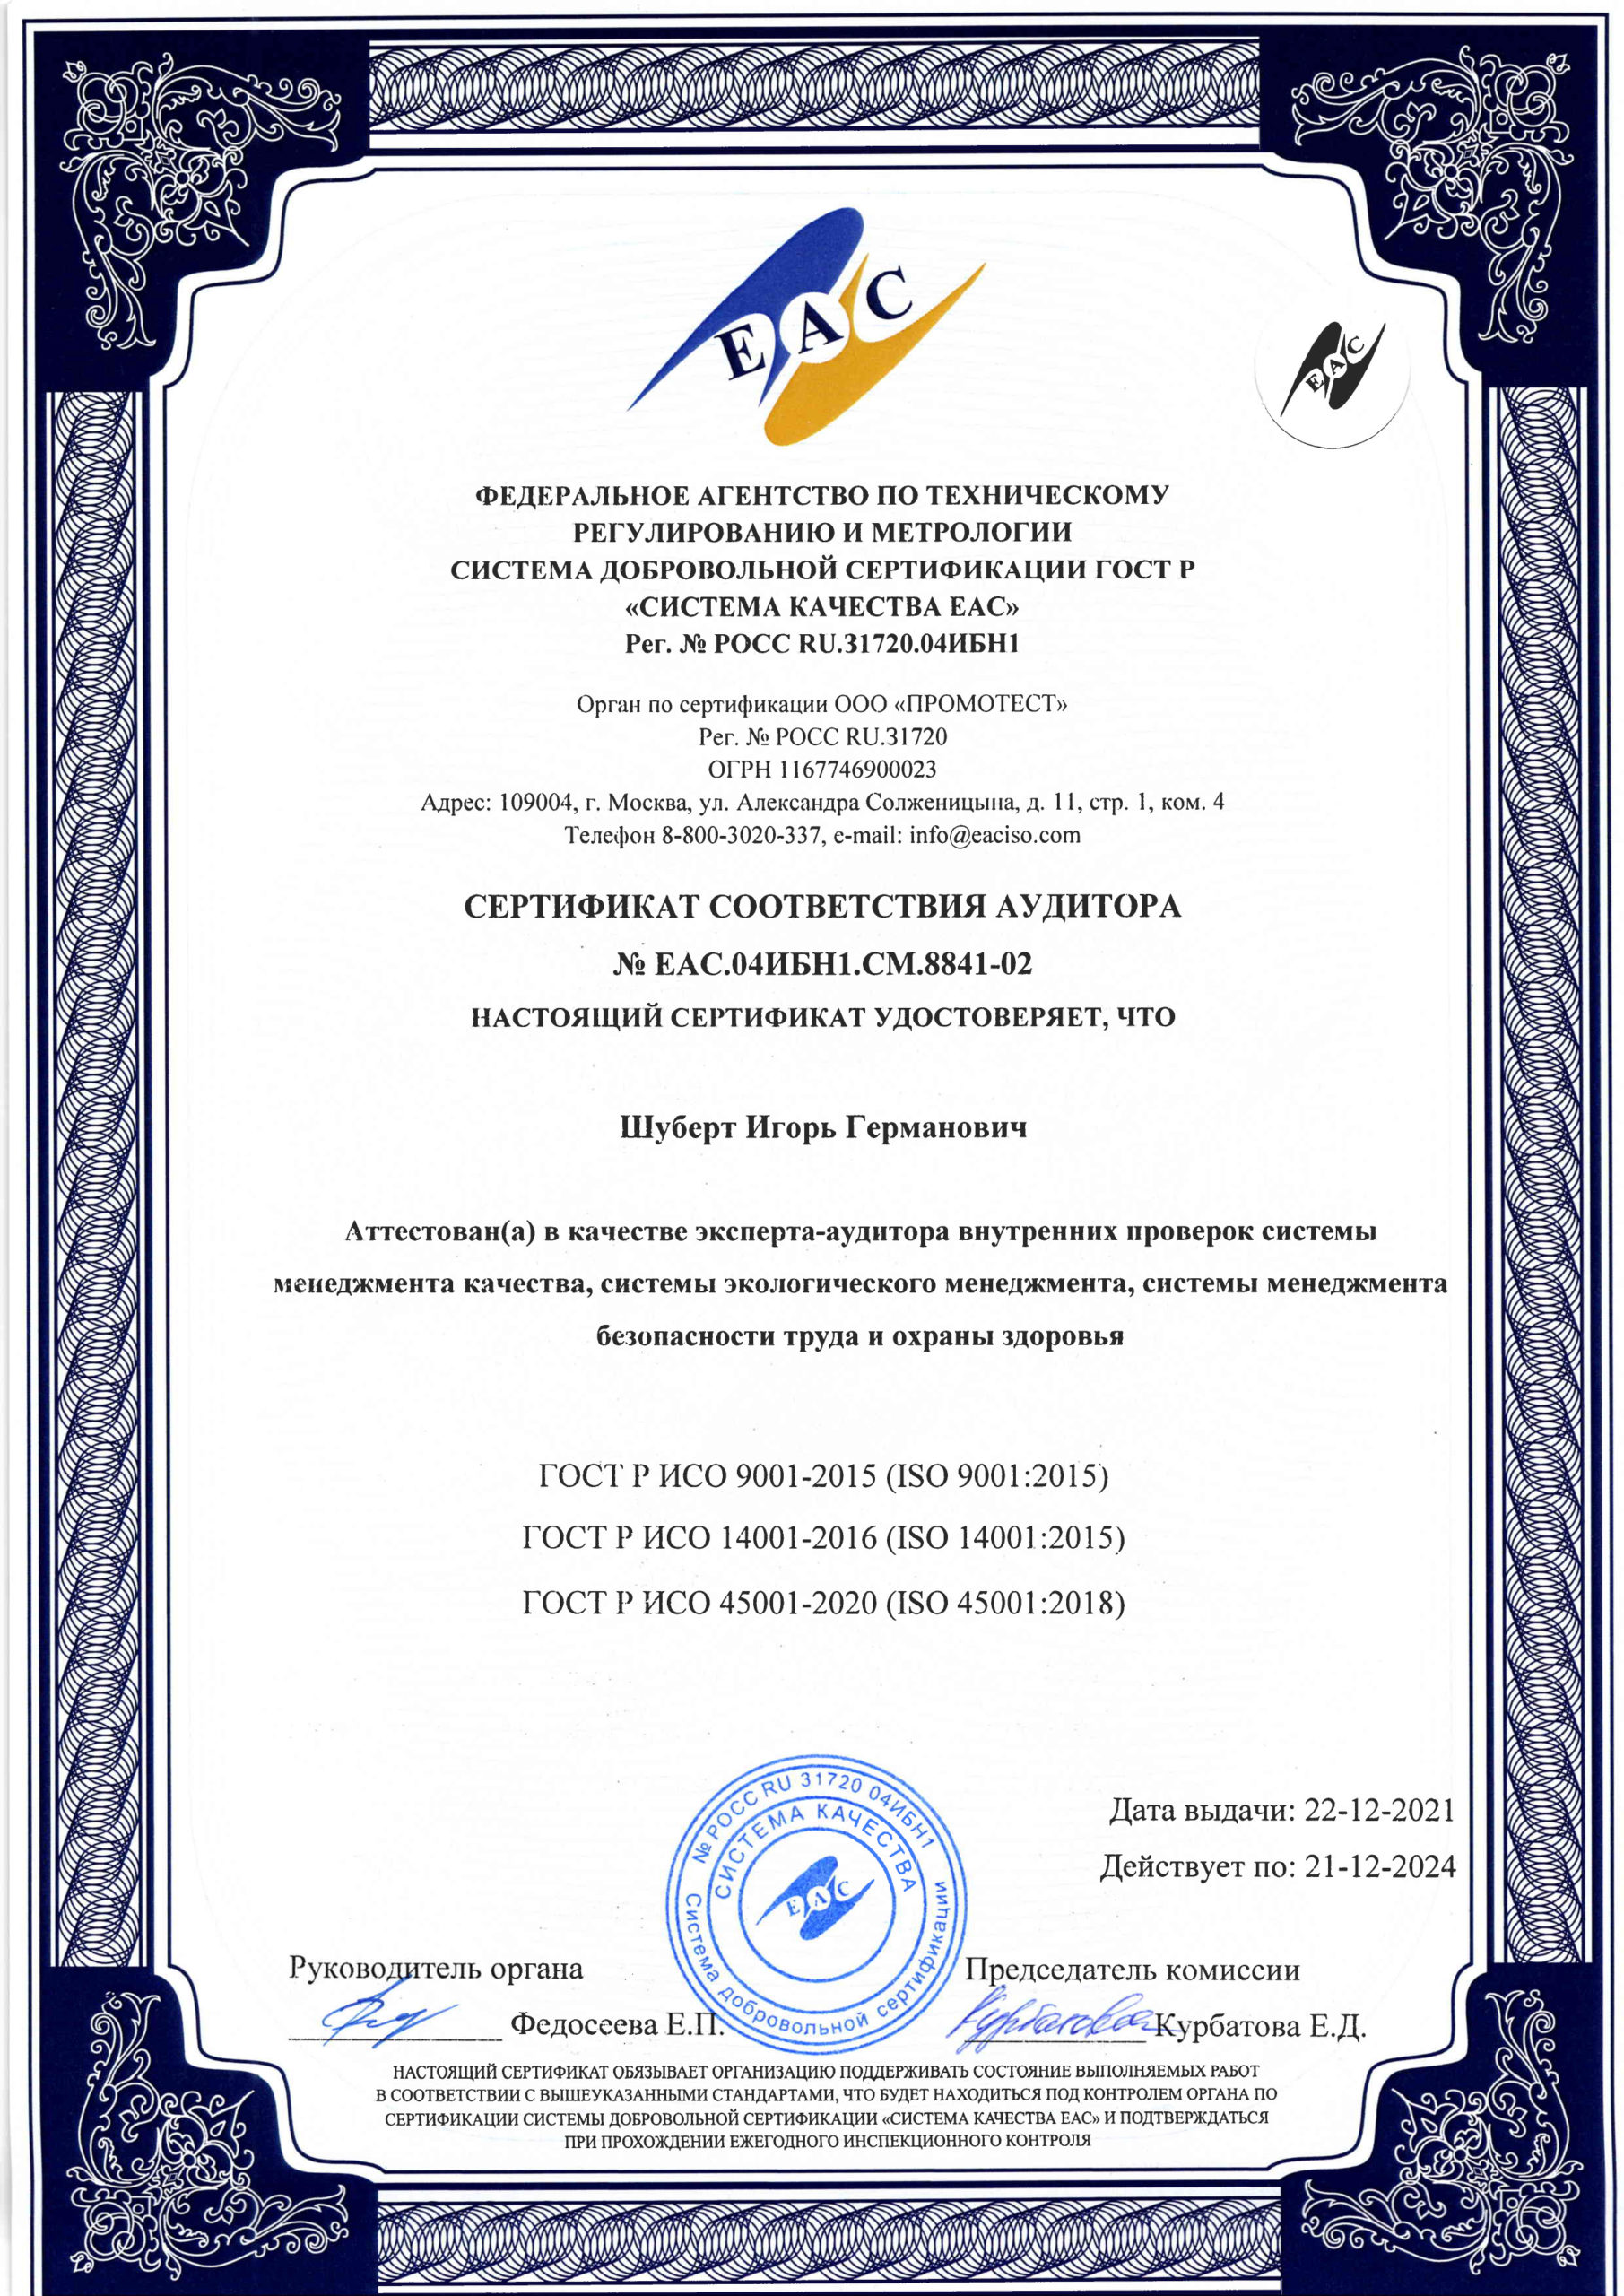 Сертификат соответствия аудитора № ЕАC.04ИБН1.СМ.8841-02 картинка